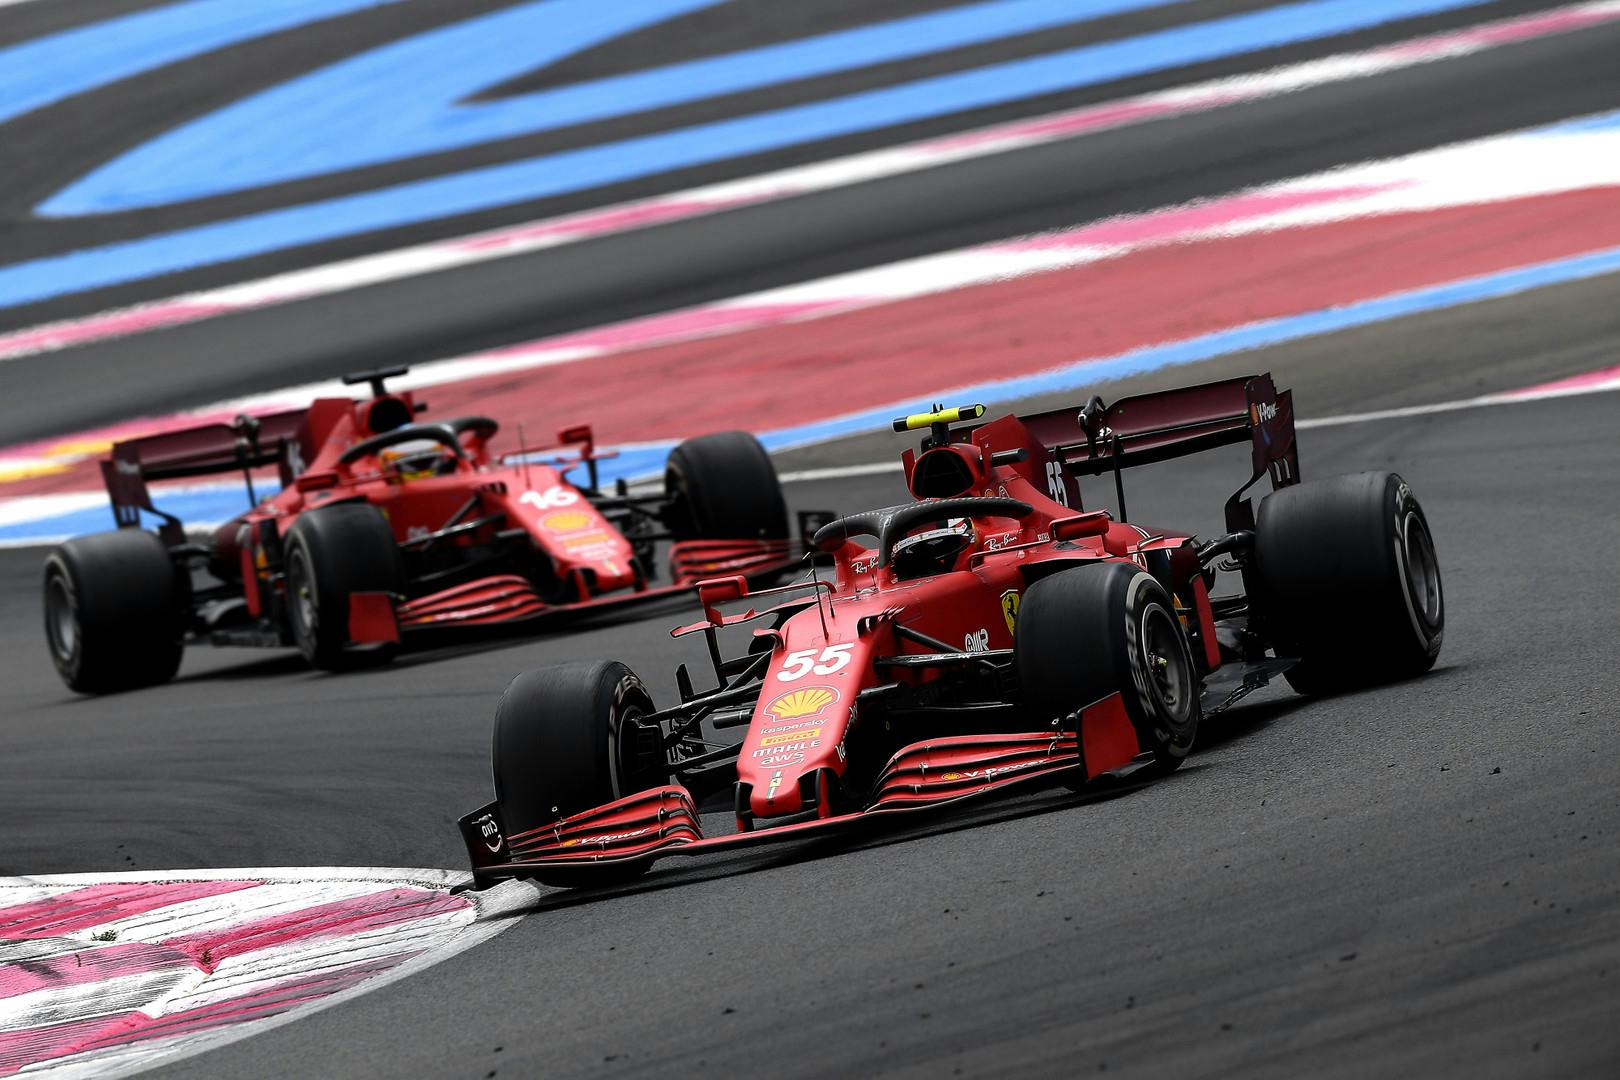 Kierowcy Ferrari wskazali przyczynę problemów w tempie wyścigowym